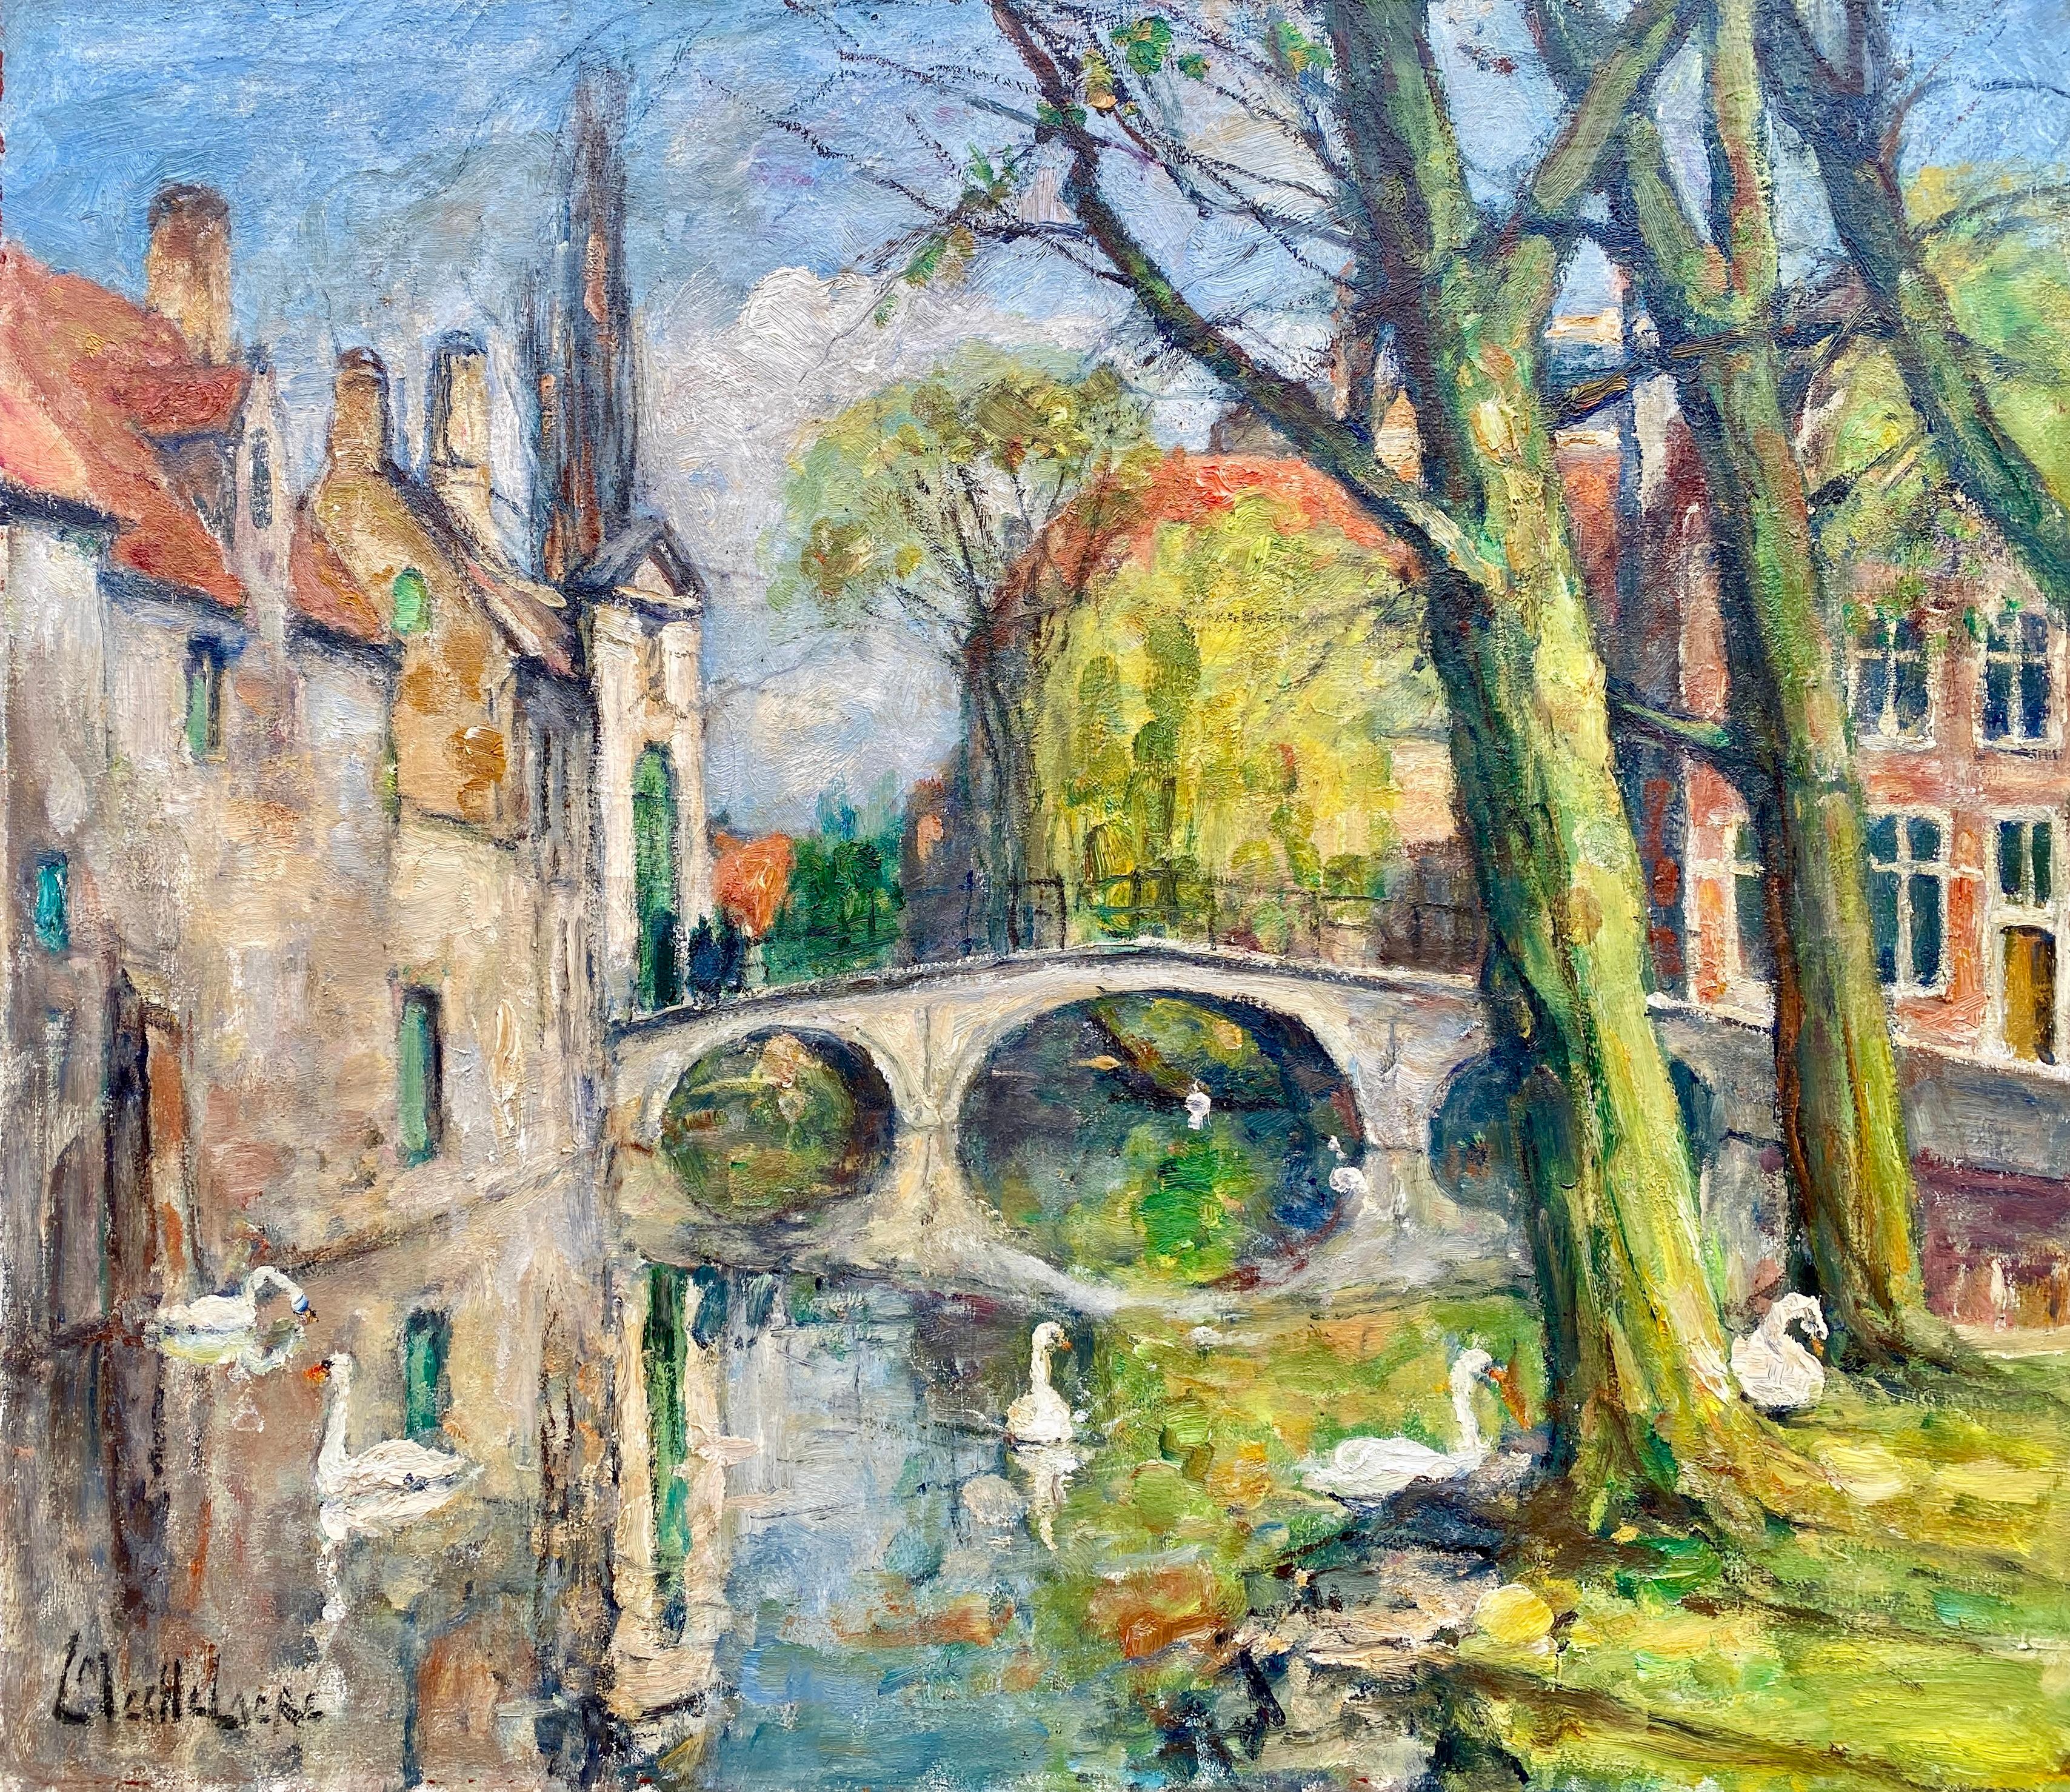 'Swans of Bruges – Beguinage Bridge' Leo Mechelaere, Bruges 1880 – 1964 Erlangen